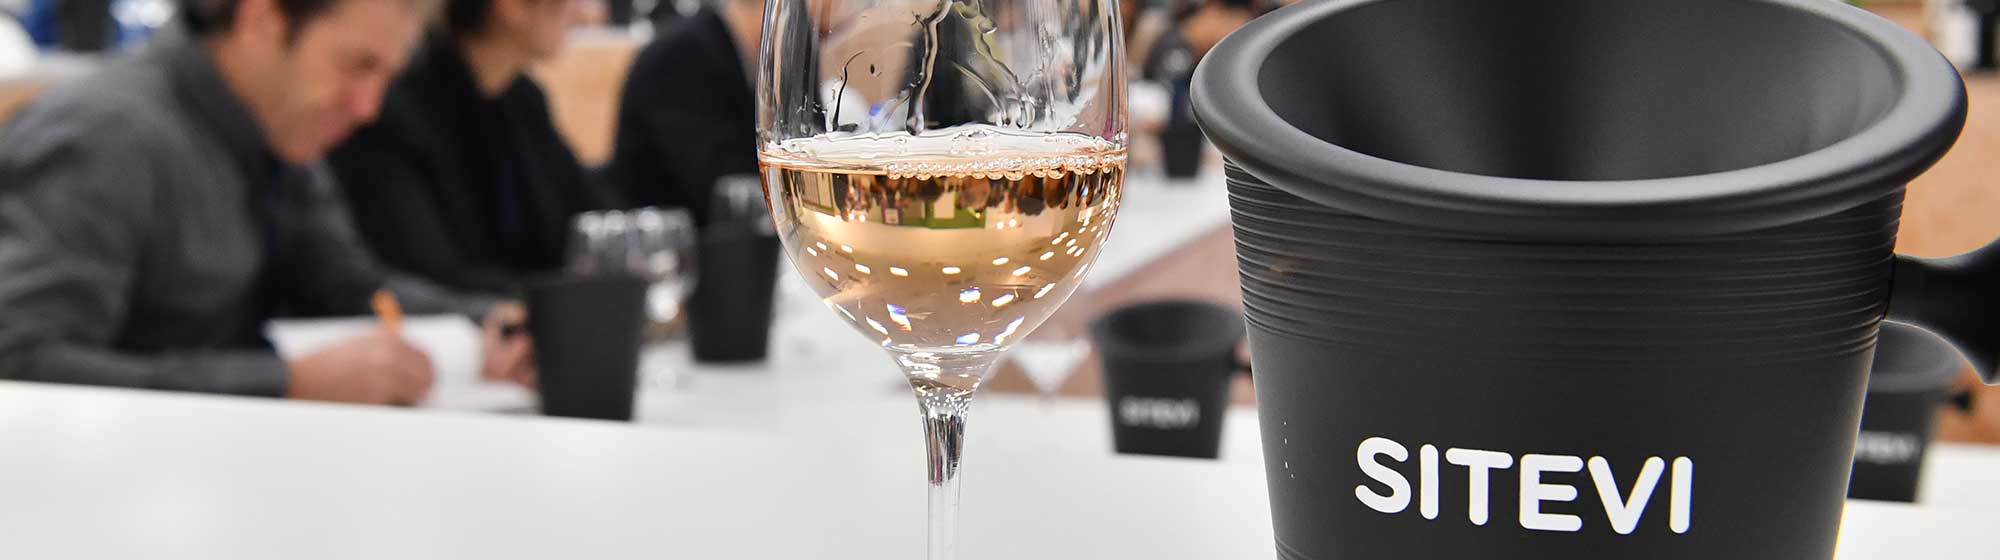 Verre de vin rosé posé dans une tasting masterclass